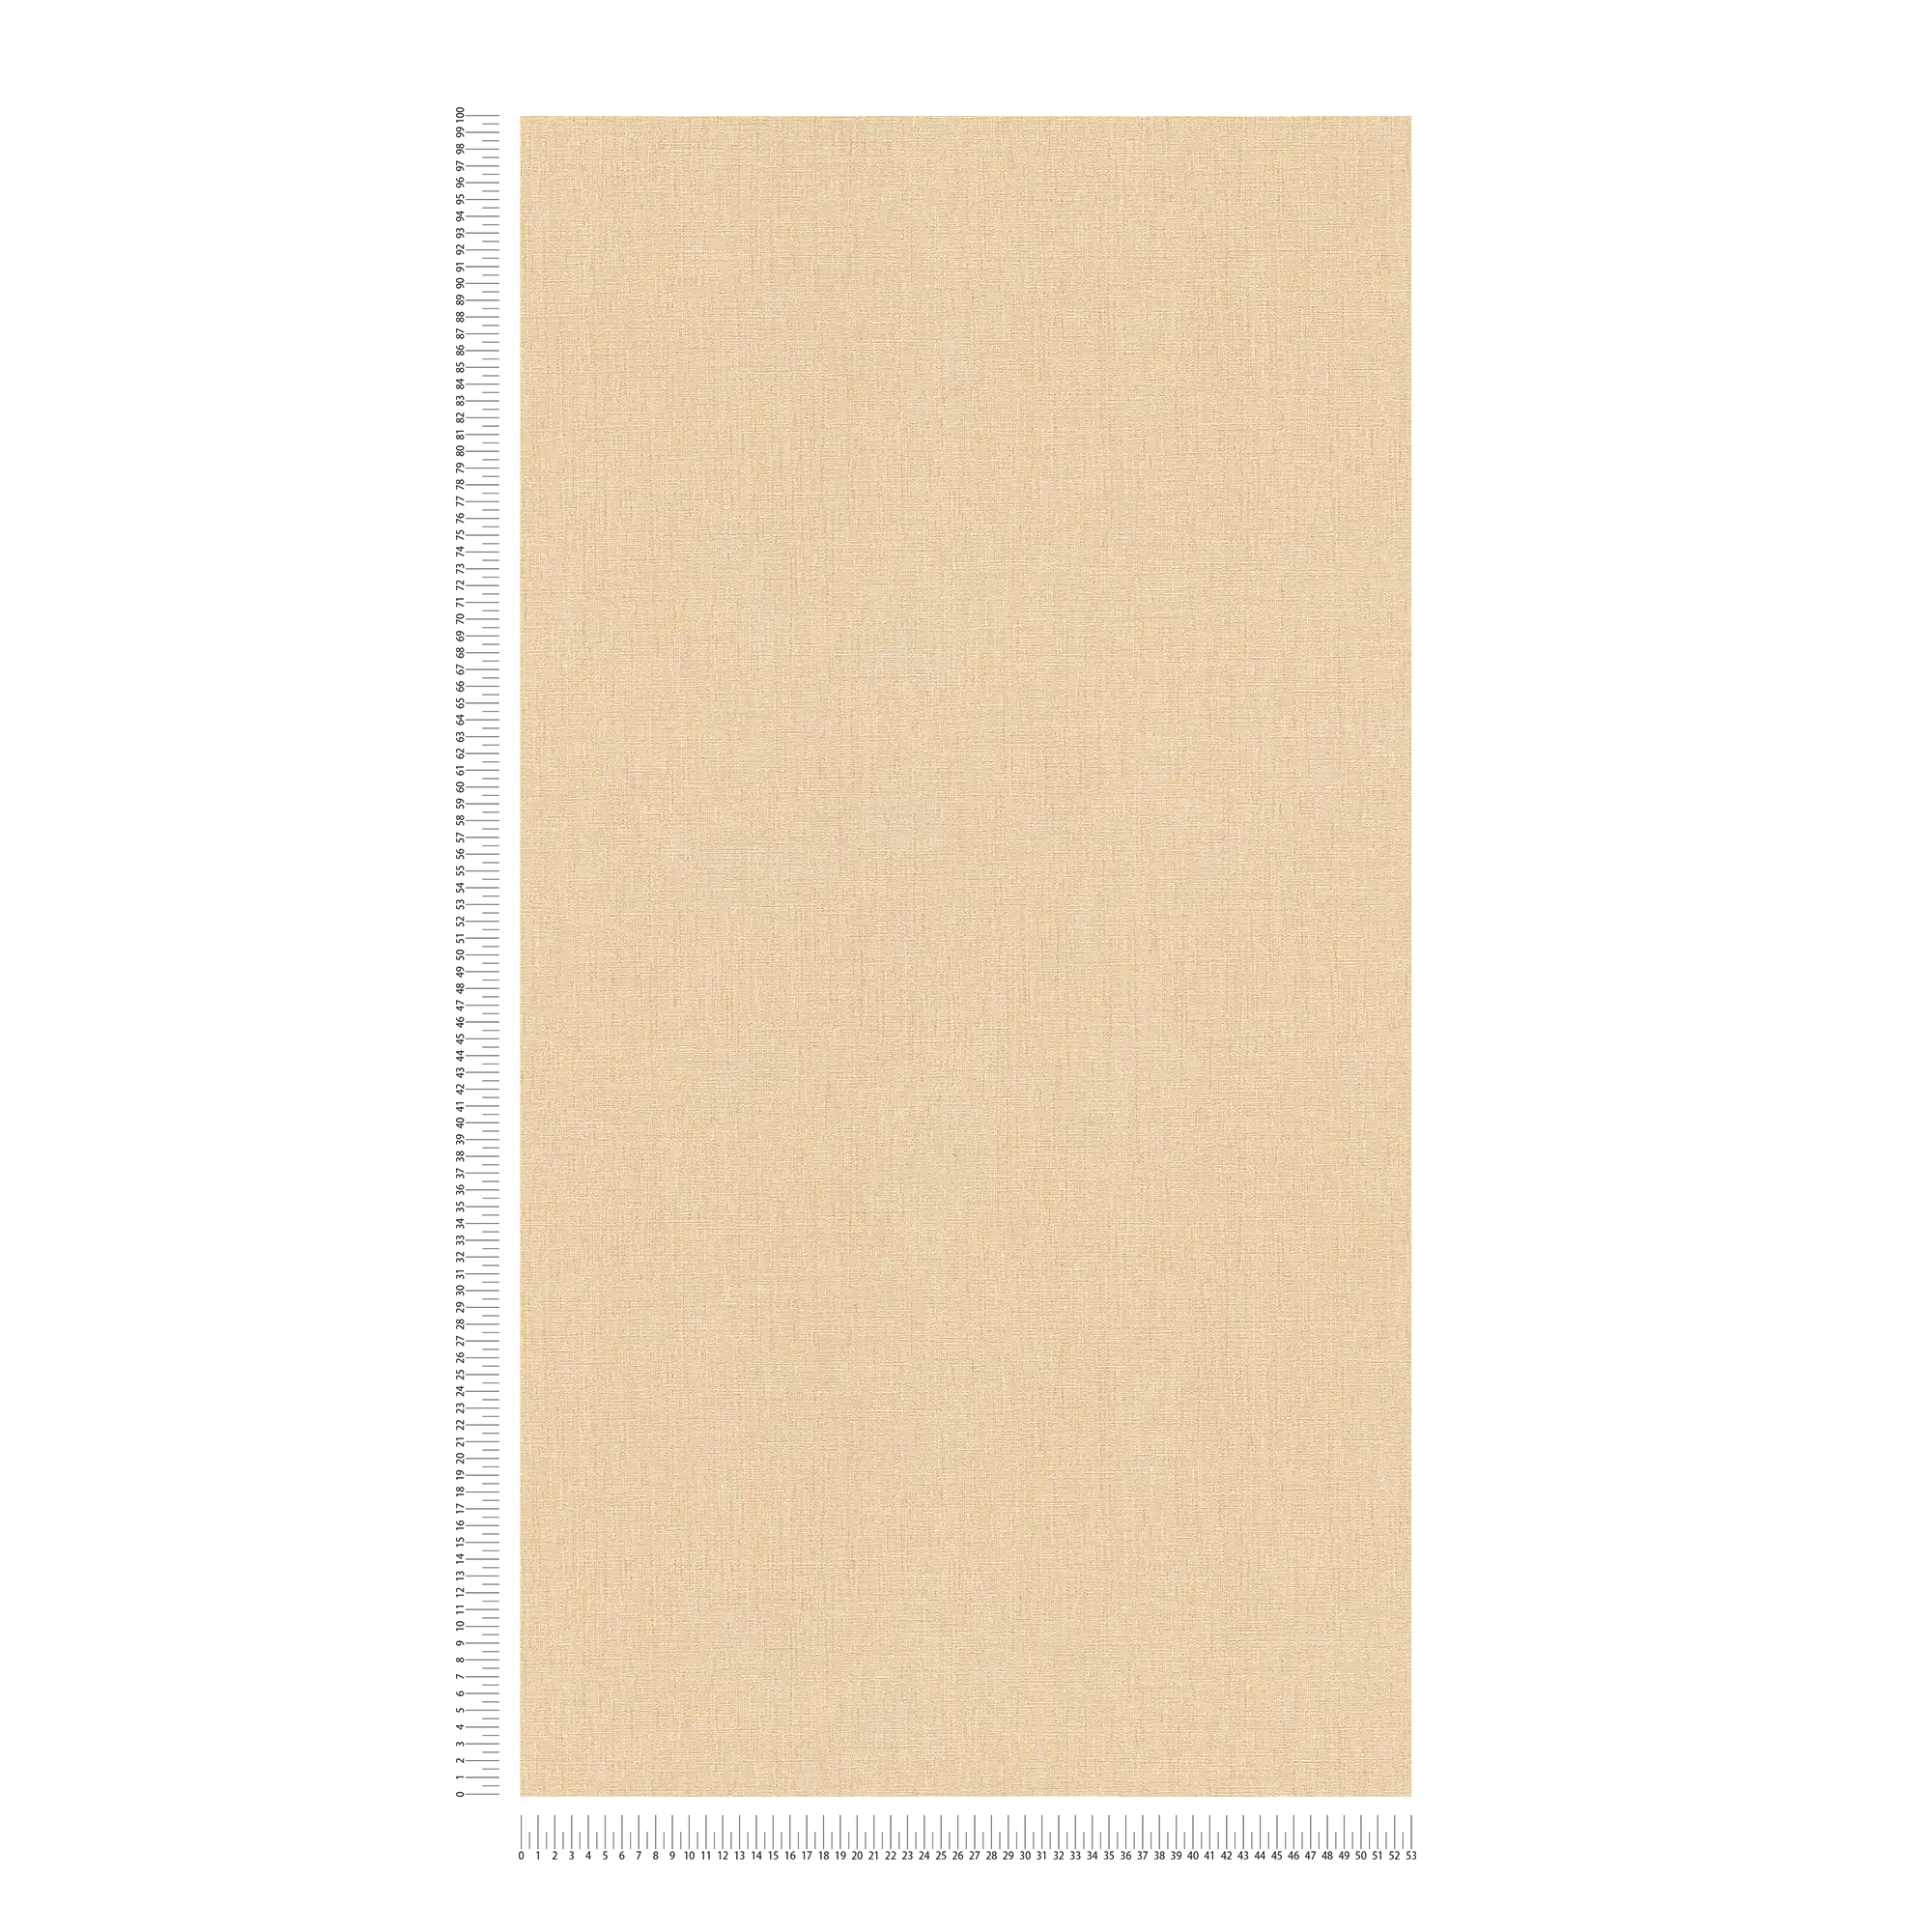             papier peint en papier intissé à l'aspect textile léger dans une teinte sobre - Beige
        